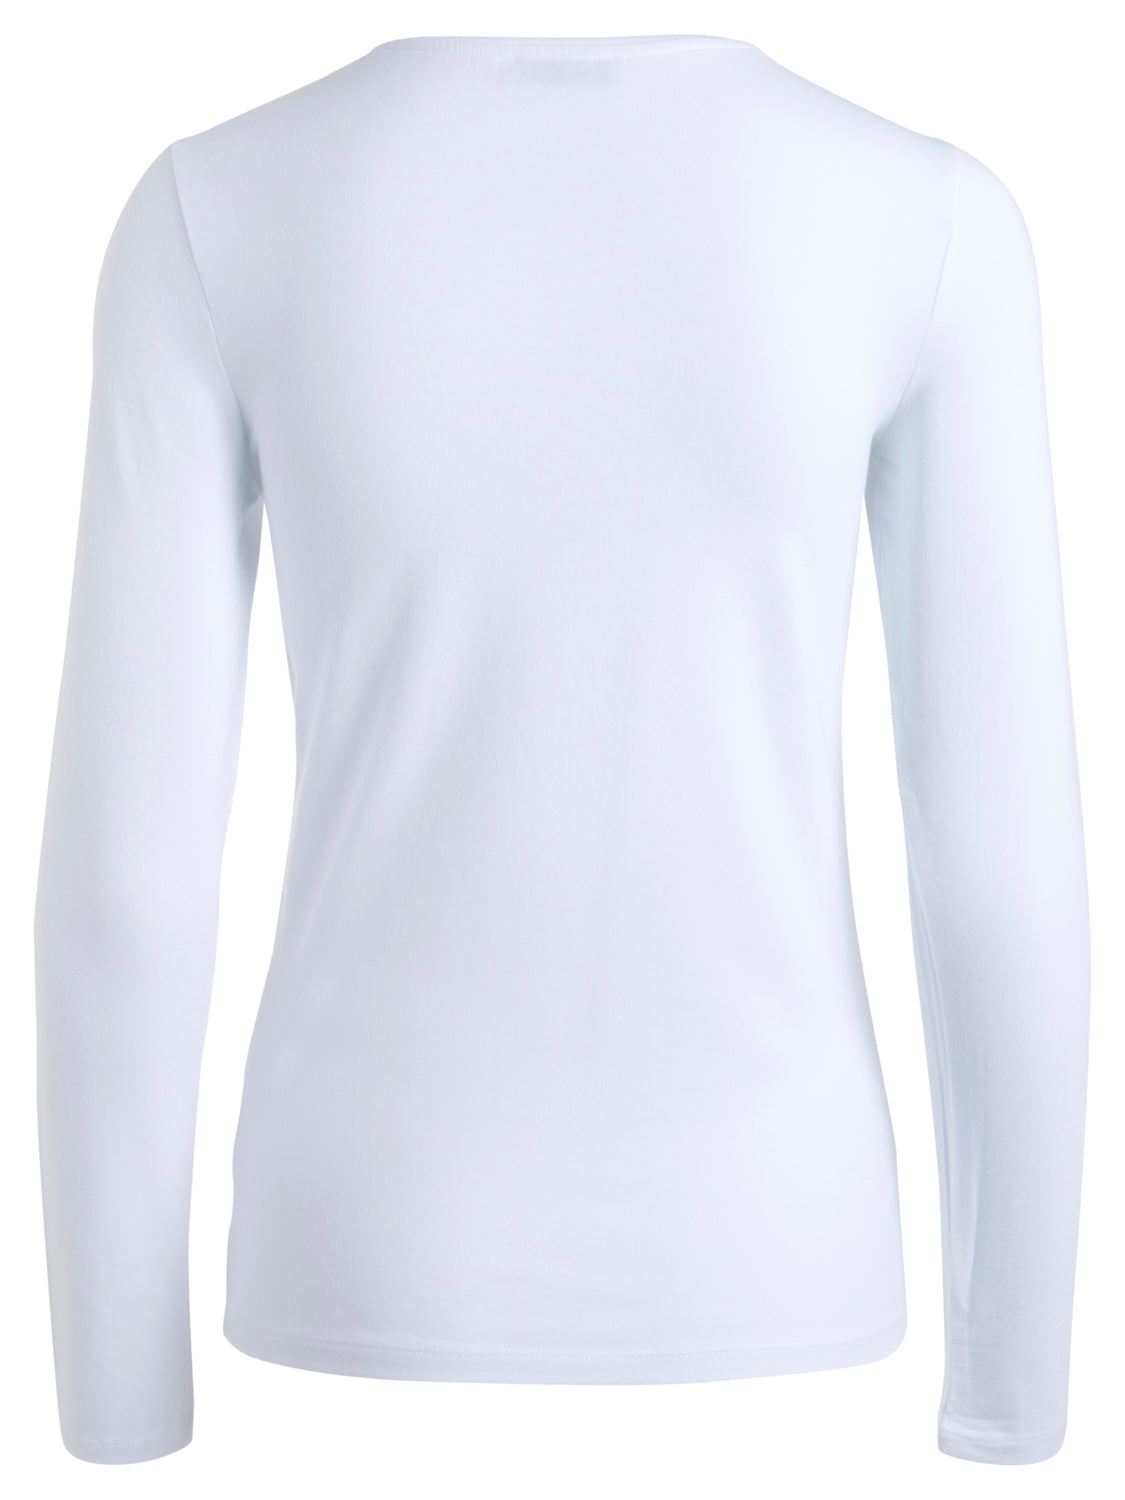 PCSIRENE T-Shirt - Bright White